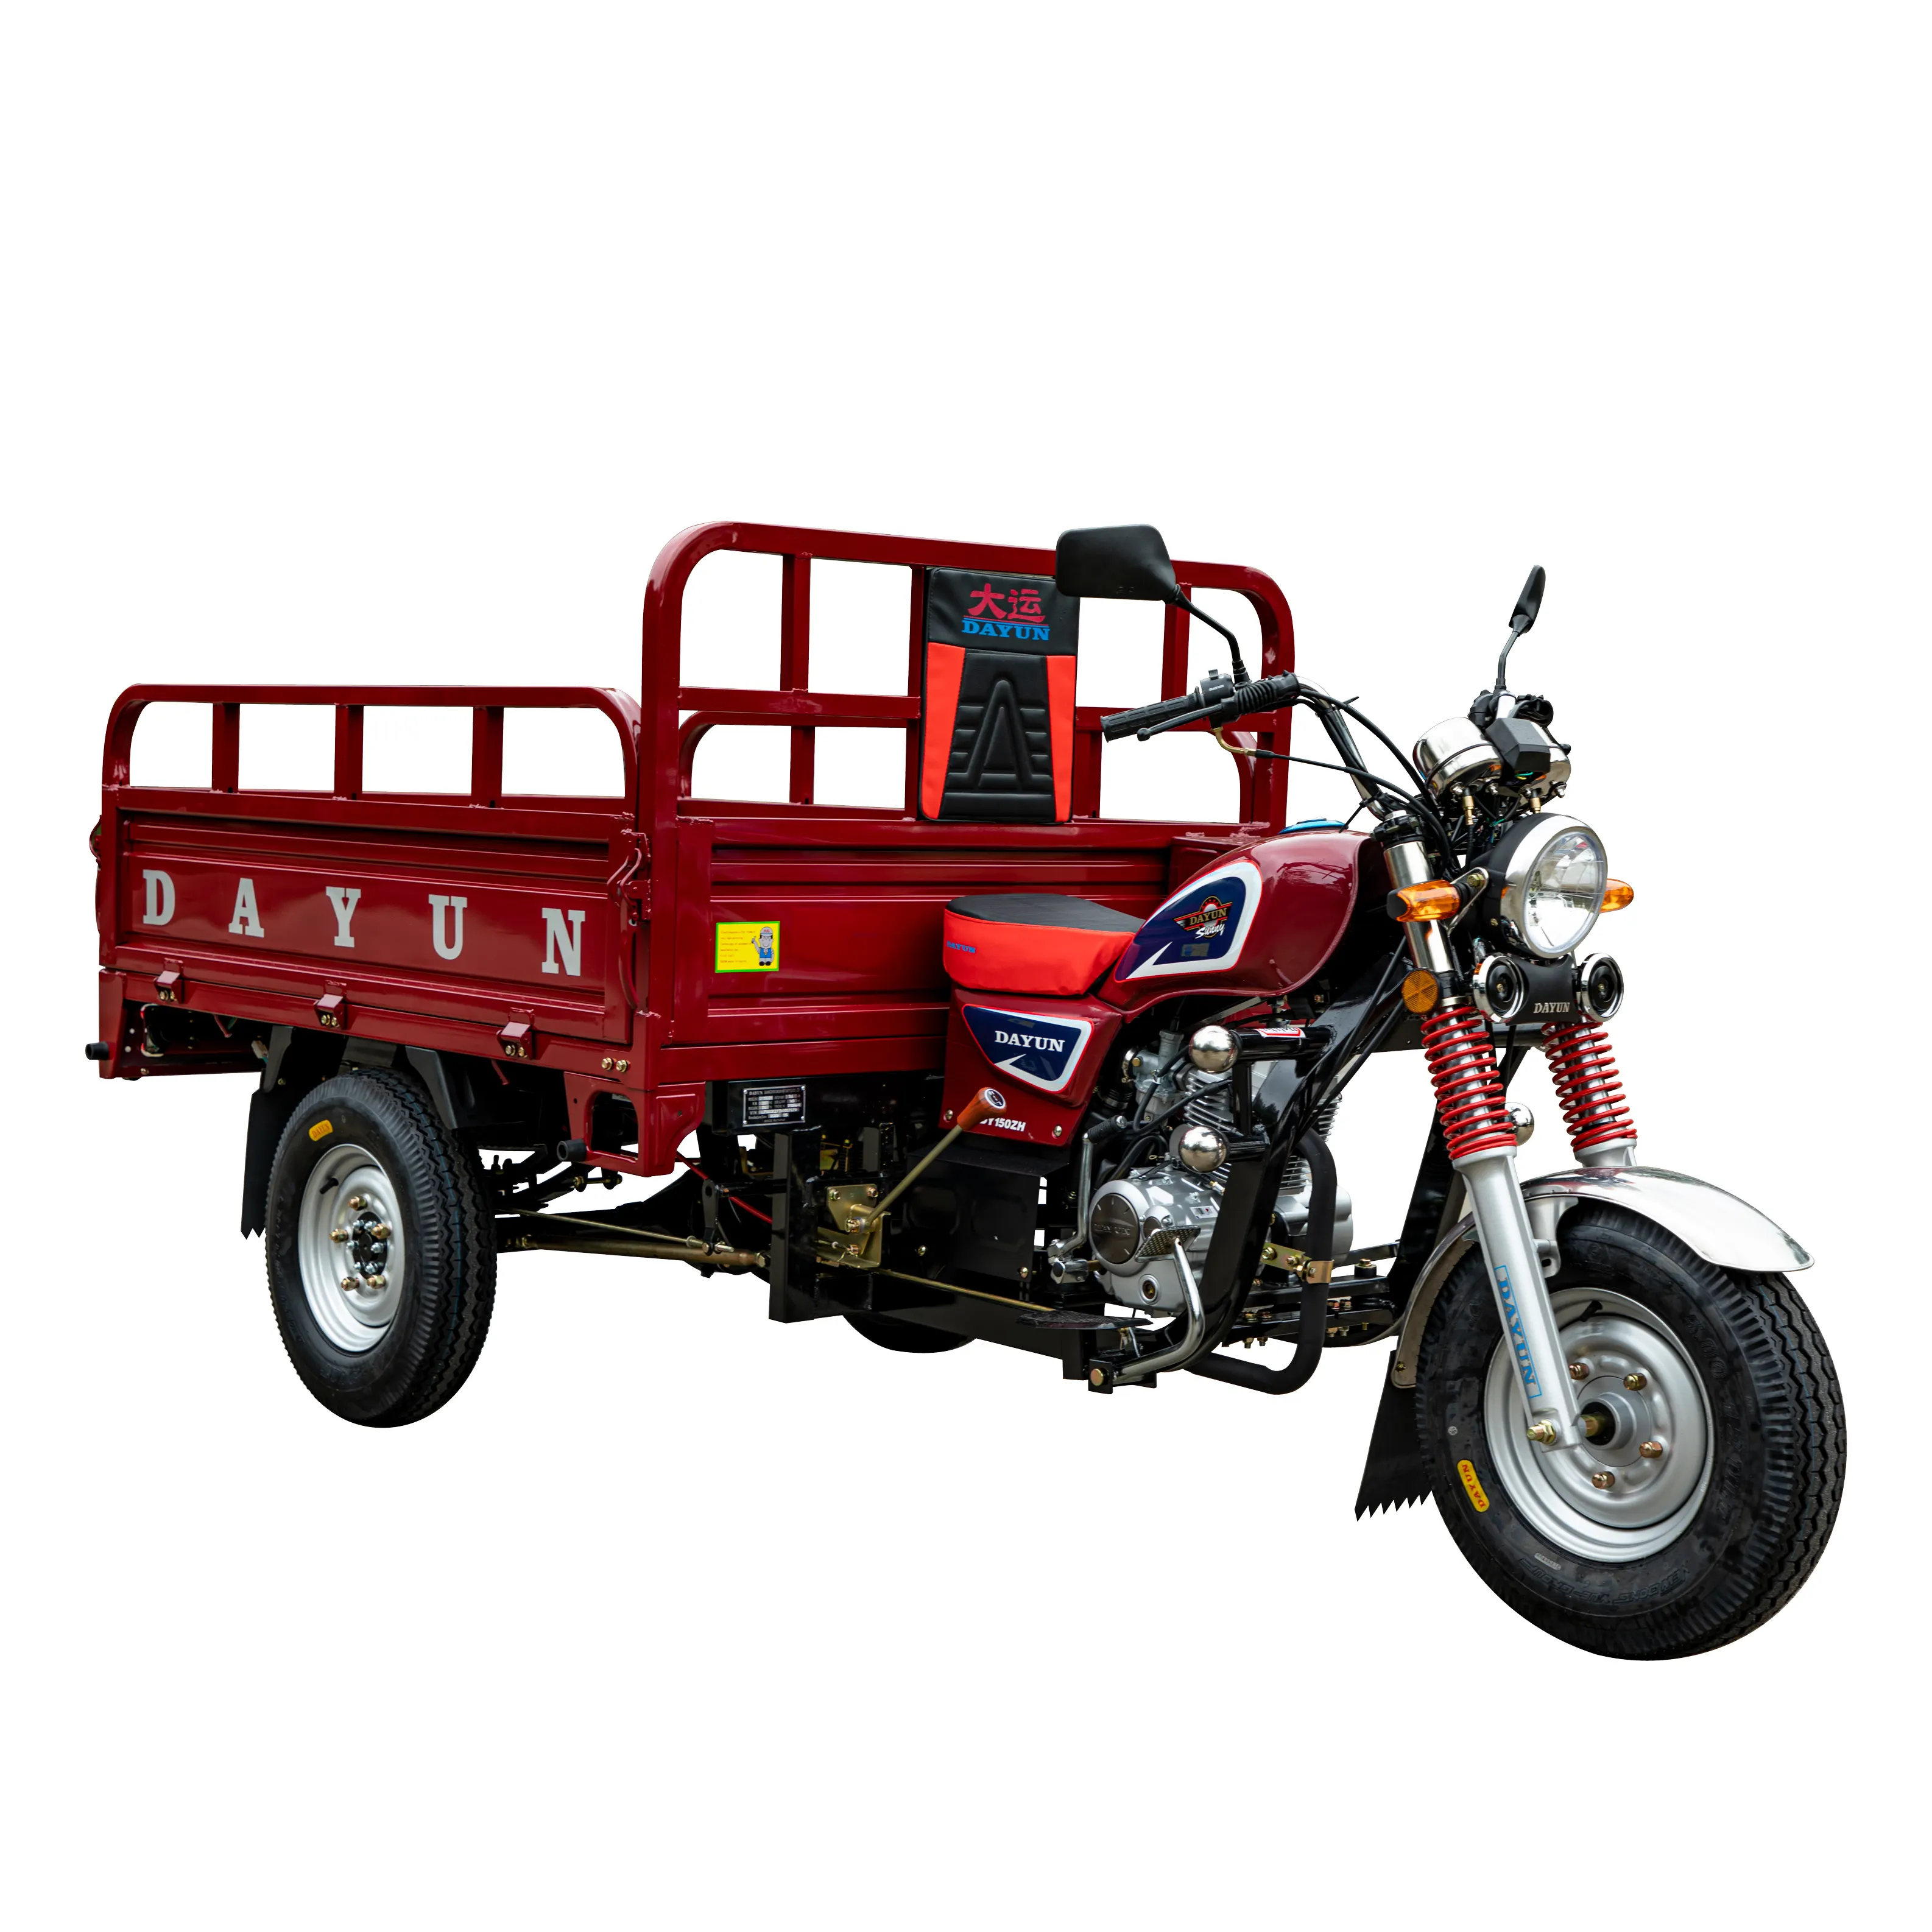 DAYUN-triciclo personalizado de 150cc y 200cc, triciclo abierto a gas, DY150ZH, 200ZH, para llevar carga